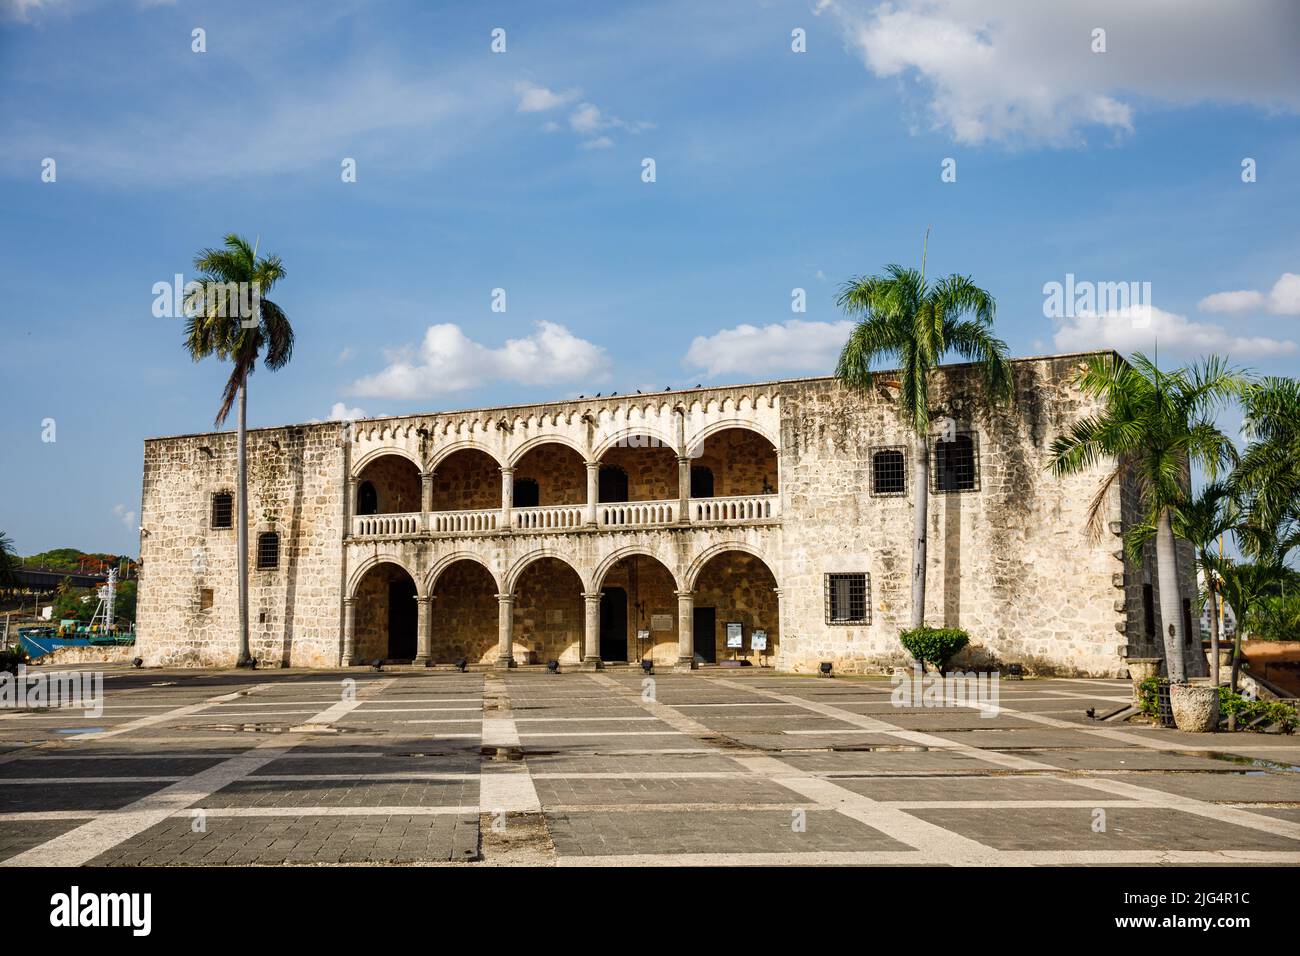 Alcazar de Colon, residenza di Diego Columbus situata in Piazza di Spagna. Zona coloniale della città, dichiarato. Santo Domingo, Repubblica Dominicana. Foto Stock